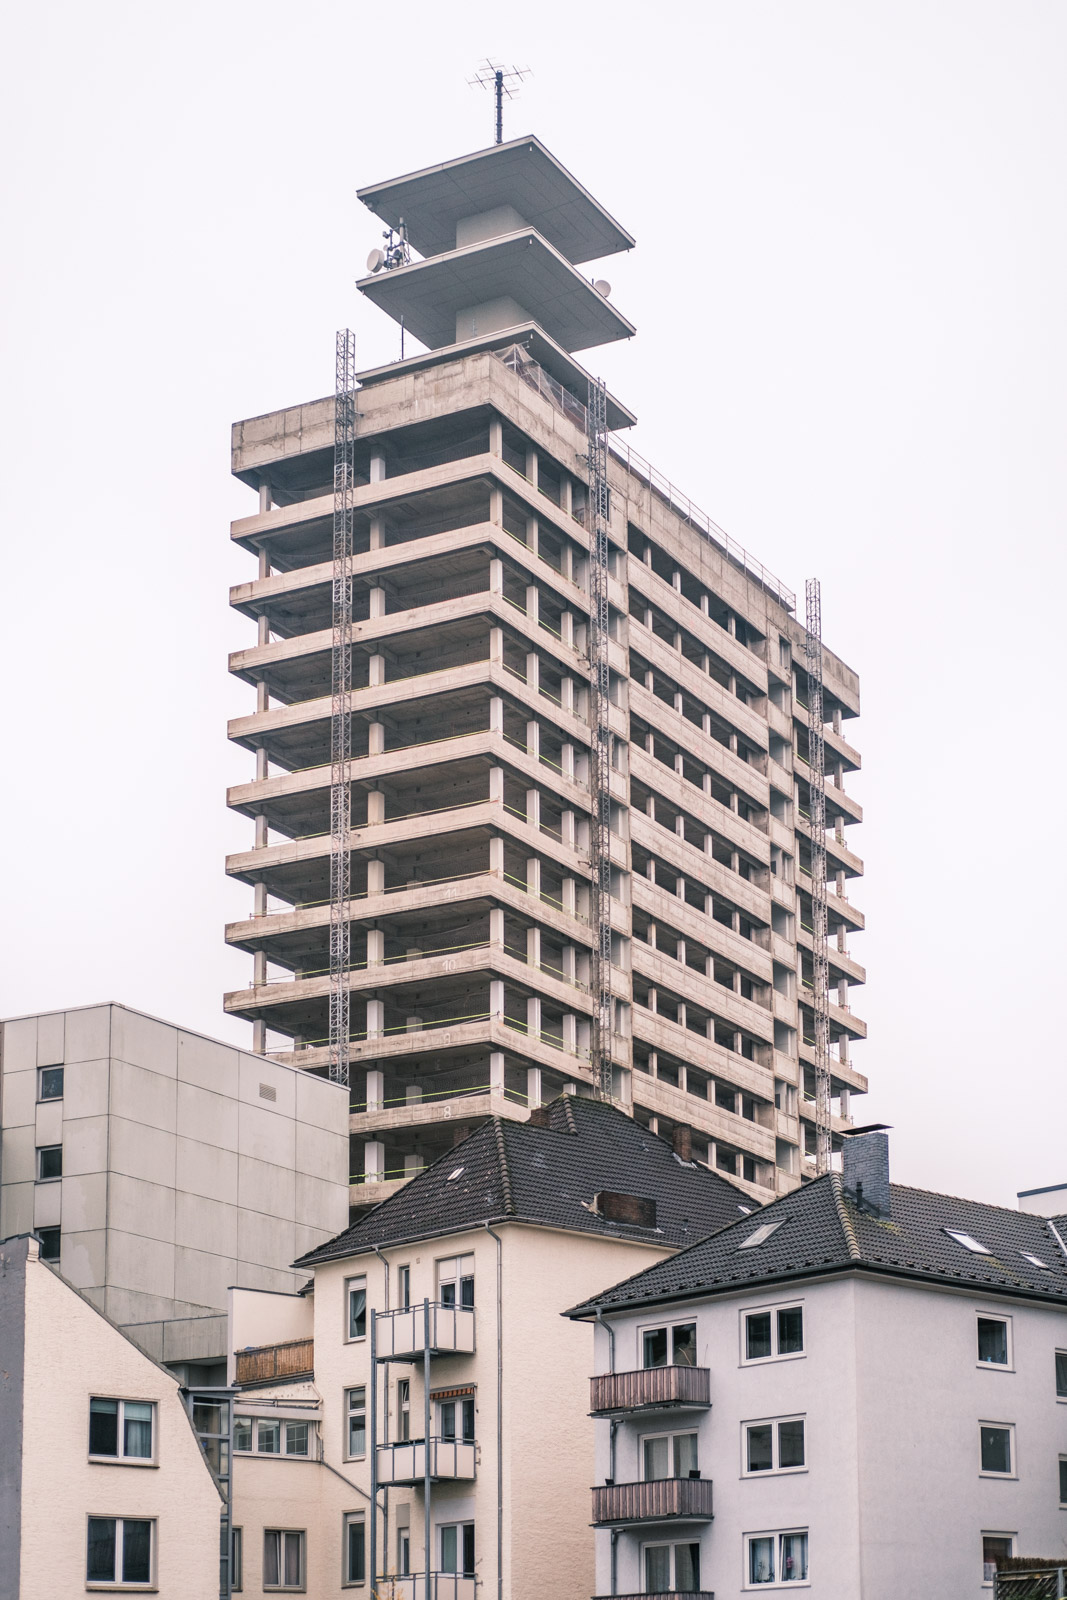 Old Telekom high-rise - Views in November (Bielefeld, Germany).